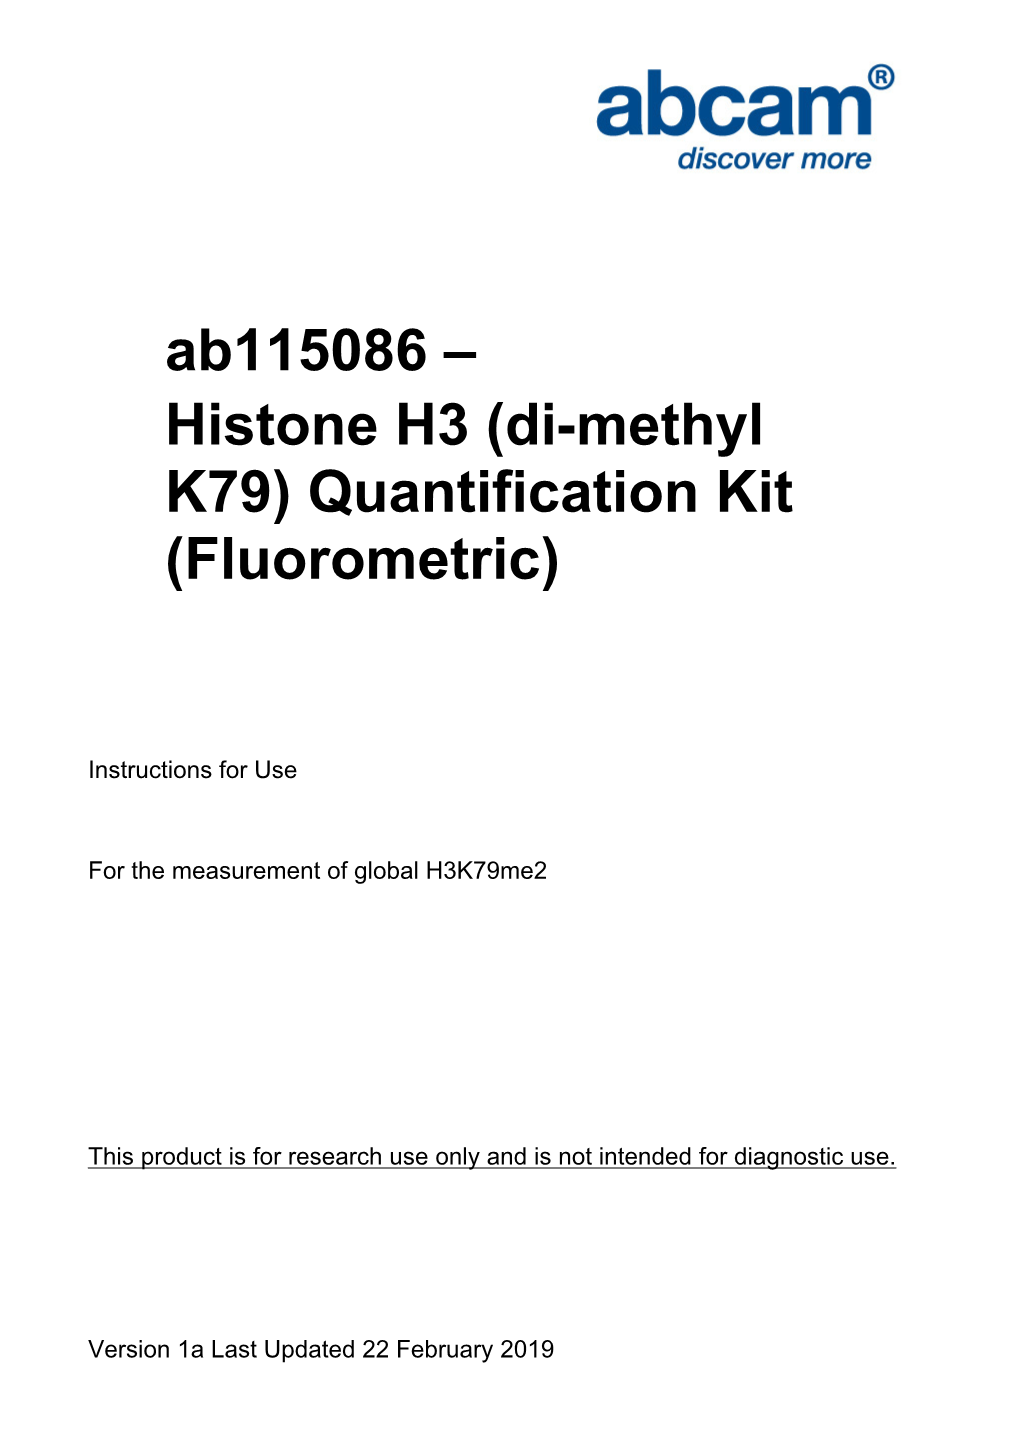 Histone H3 (Di-Methyl K79) Quantification Kit (Fluorometric)